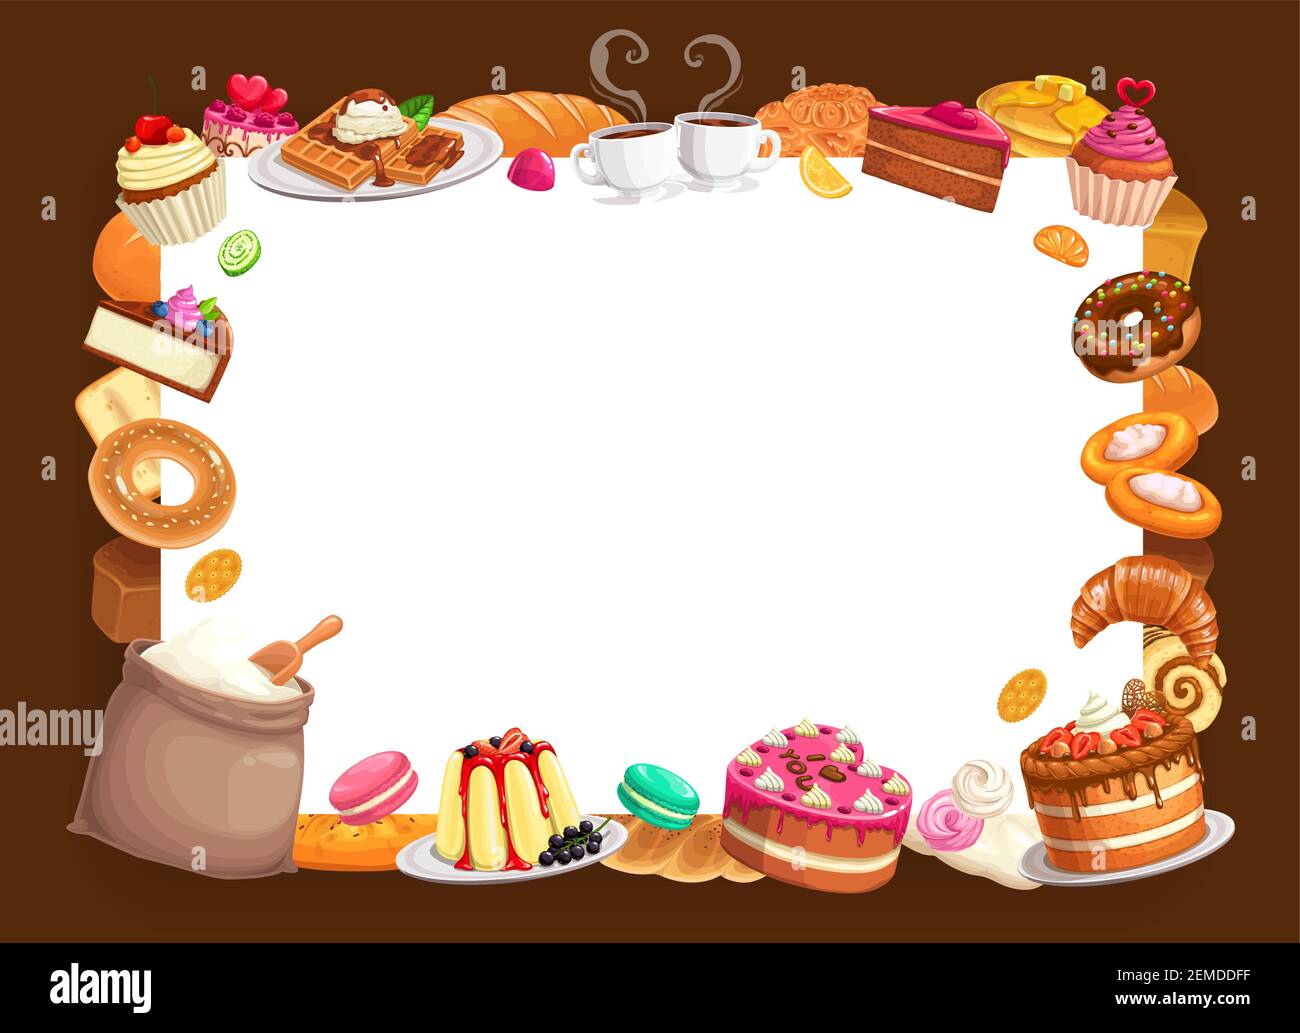 Bäcker Shop Vektor-Rahmen, Backwaren und Desserts, süße Backwaren  Erdbeerkuchen, Kuchen, Waffeln und Cupcakes mit Pudding, Croissant und Mehl  sa Stock-Vektorgrafik - Alamy